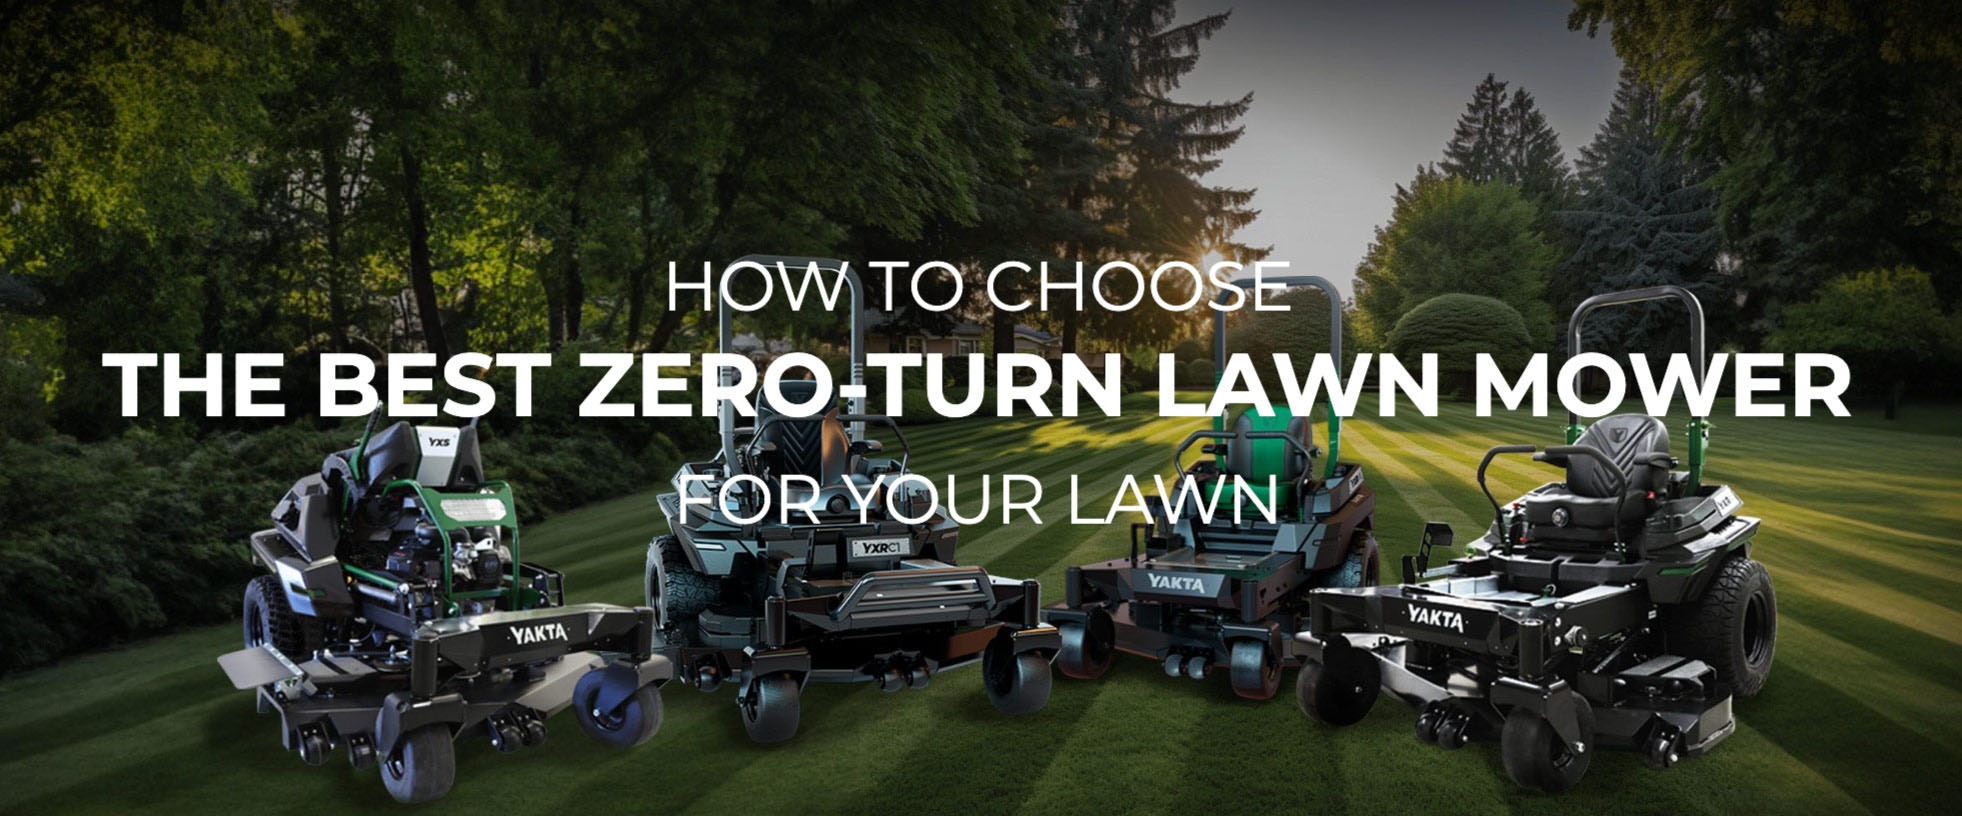 Yakta mowers: how to choose the best zero-turn mower